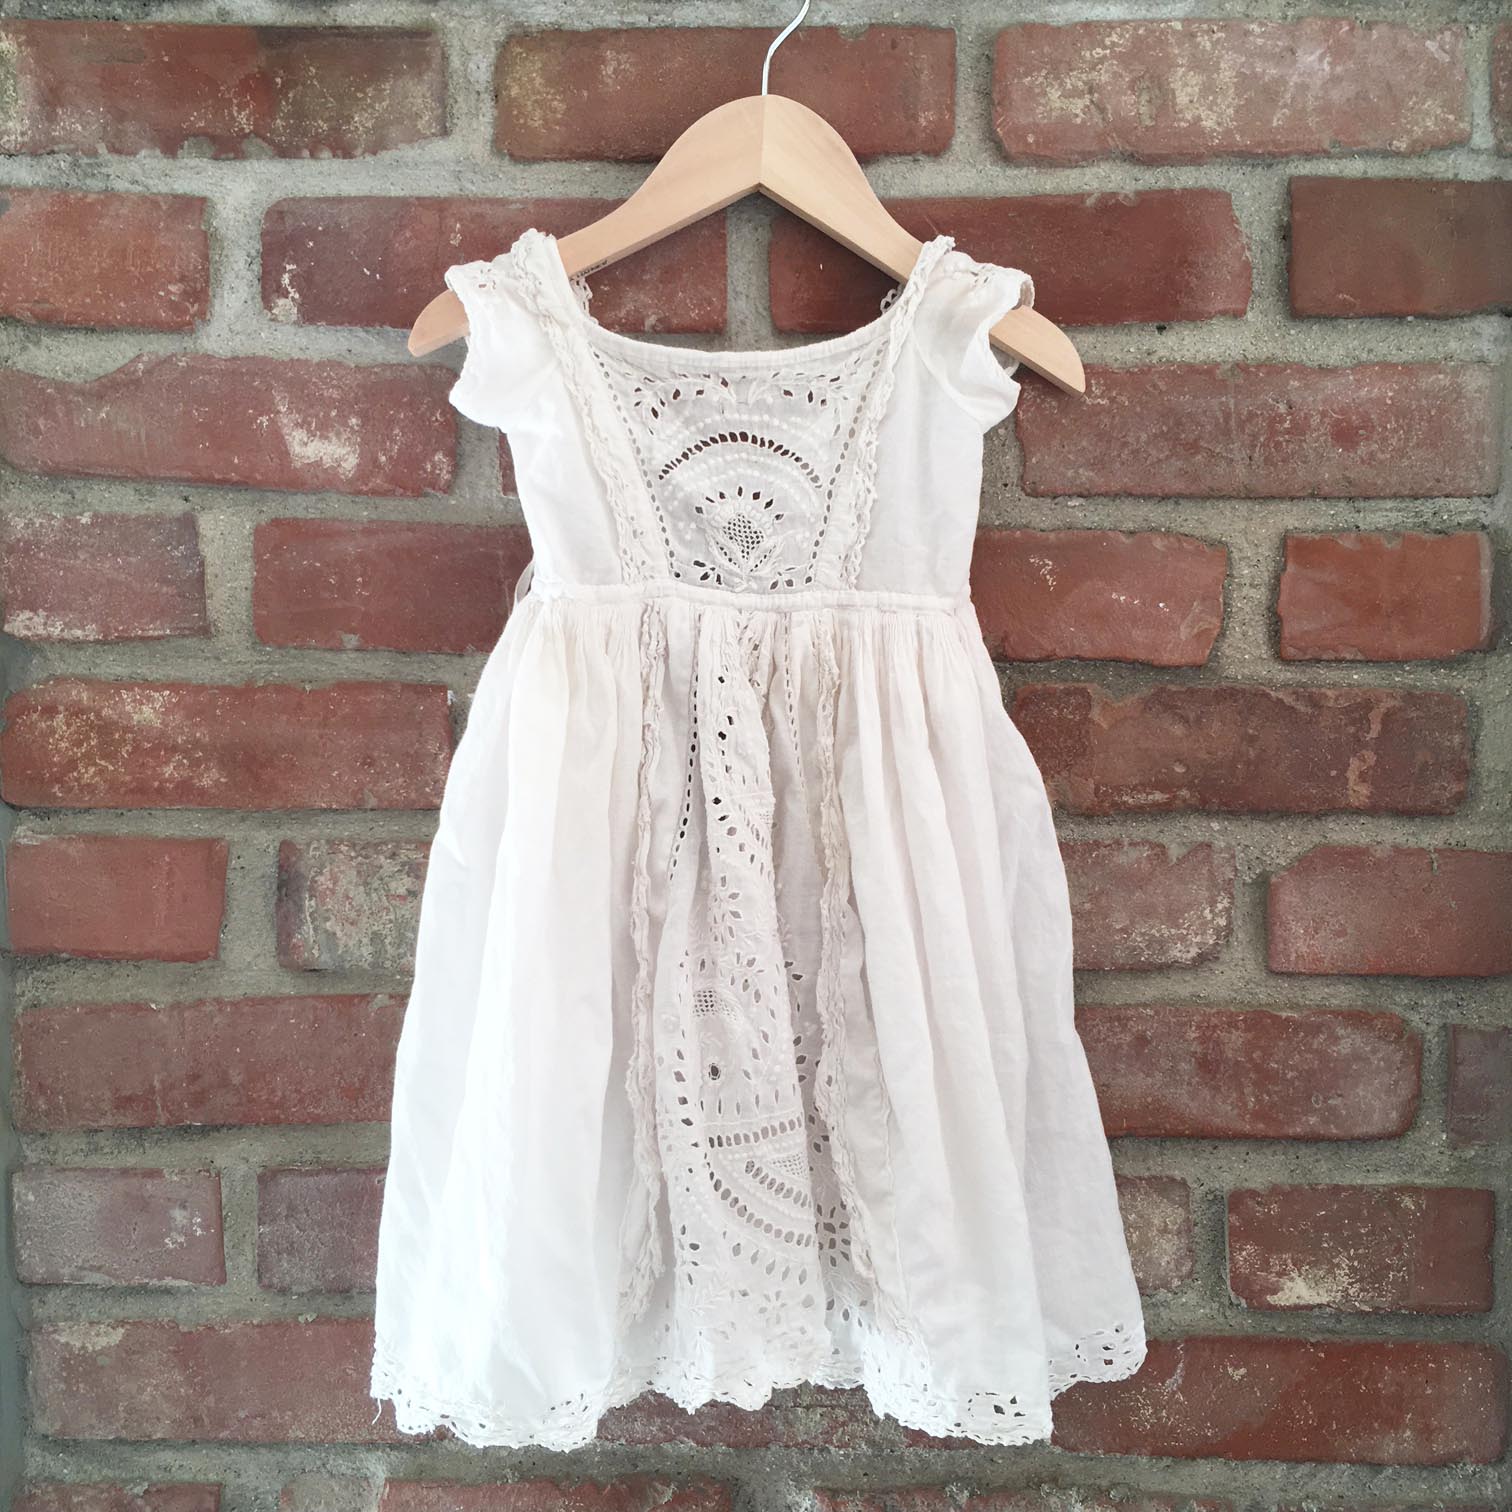 Victorian whitework dress size 6-12 months